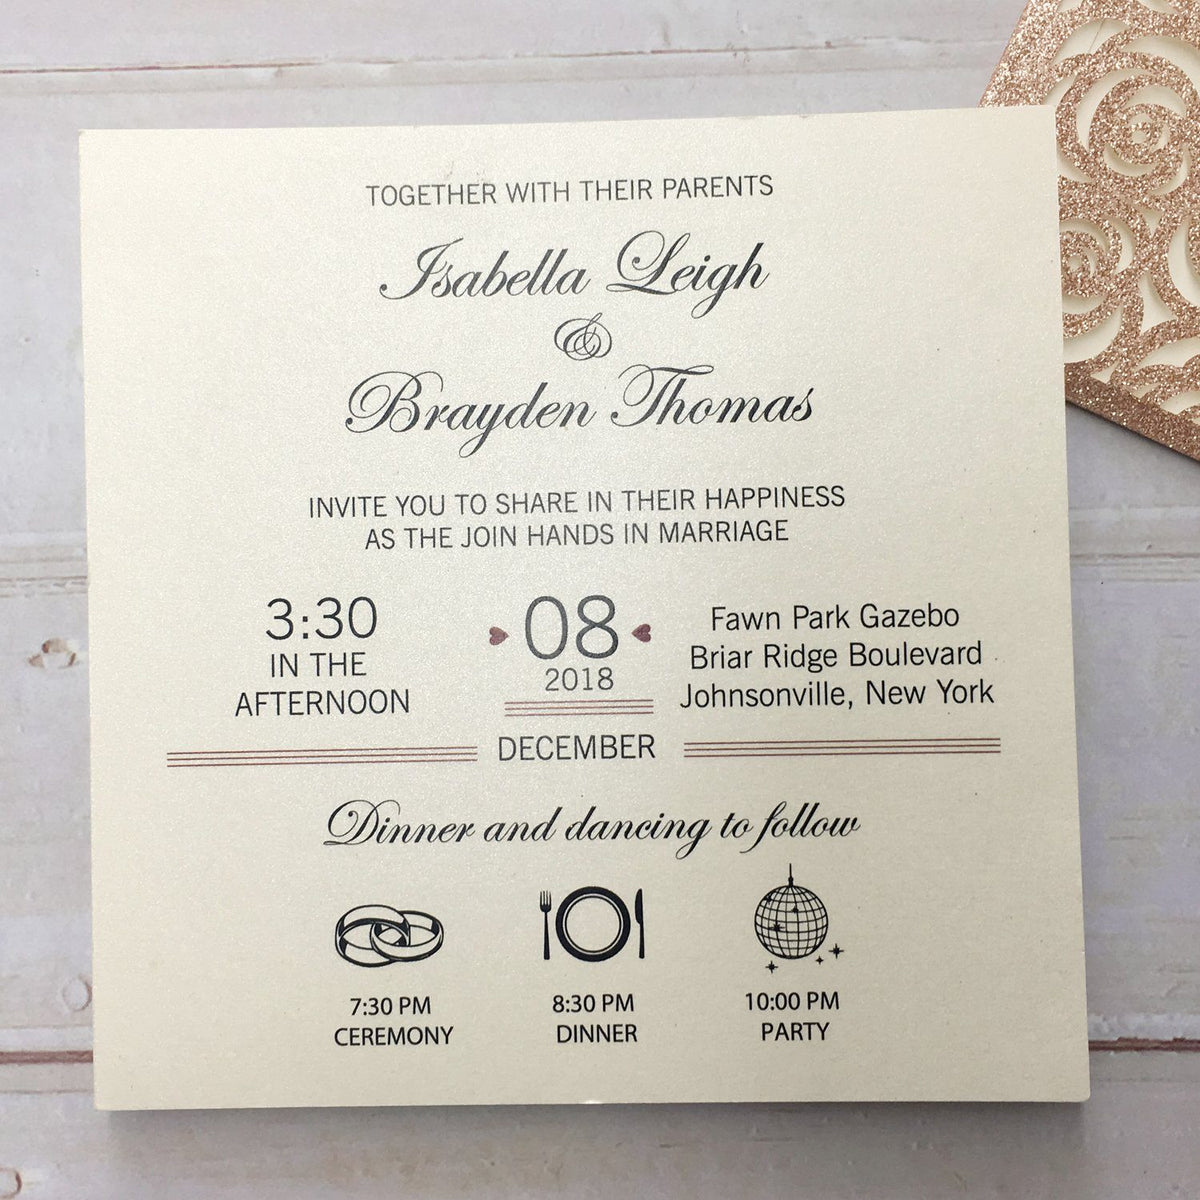 FROSTED Lucite Acryl-Hochzeitseinladungen, Kalligrafiefolie, Golddruck